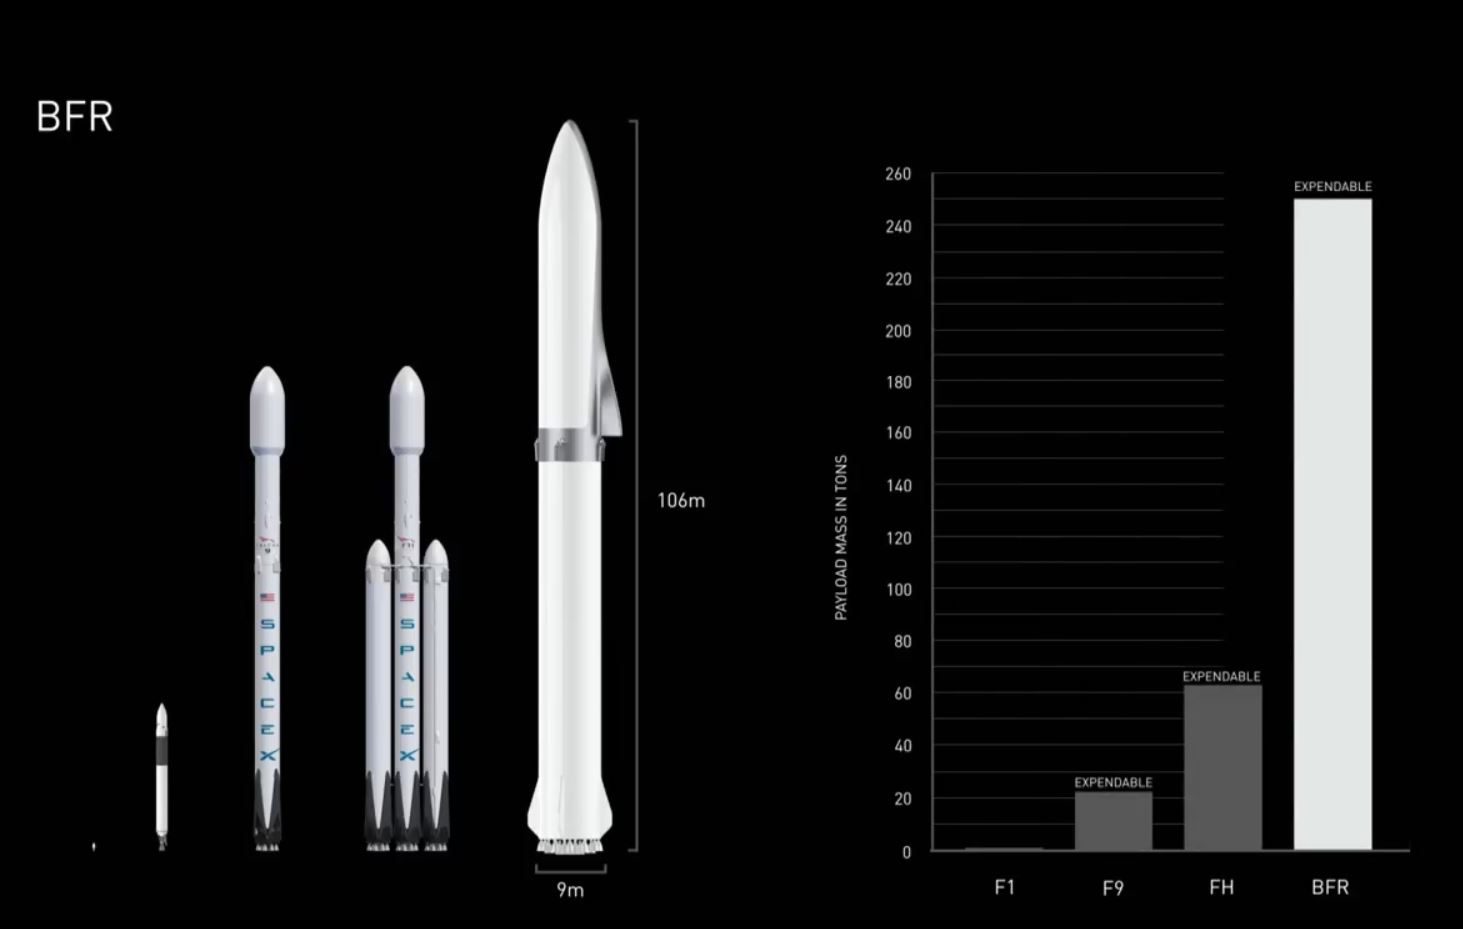 Comparaison de toutes les fusées de Space X.